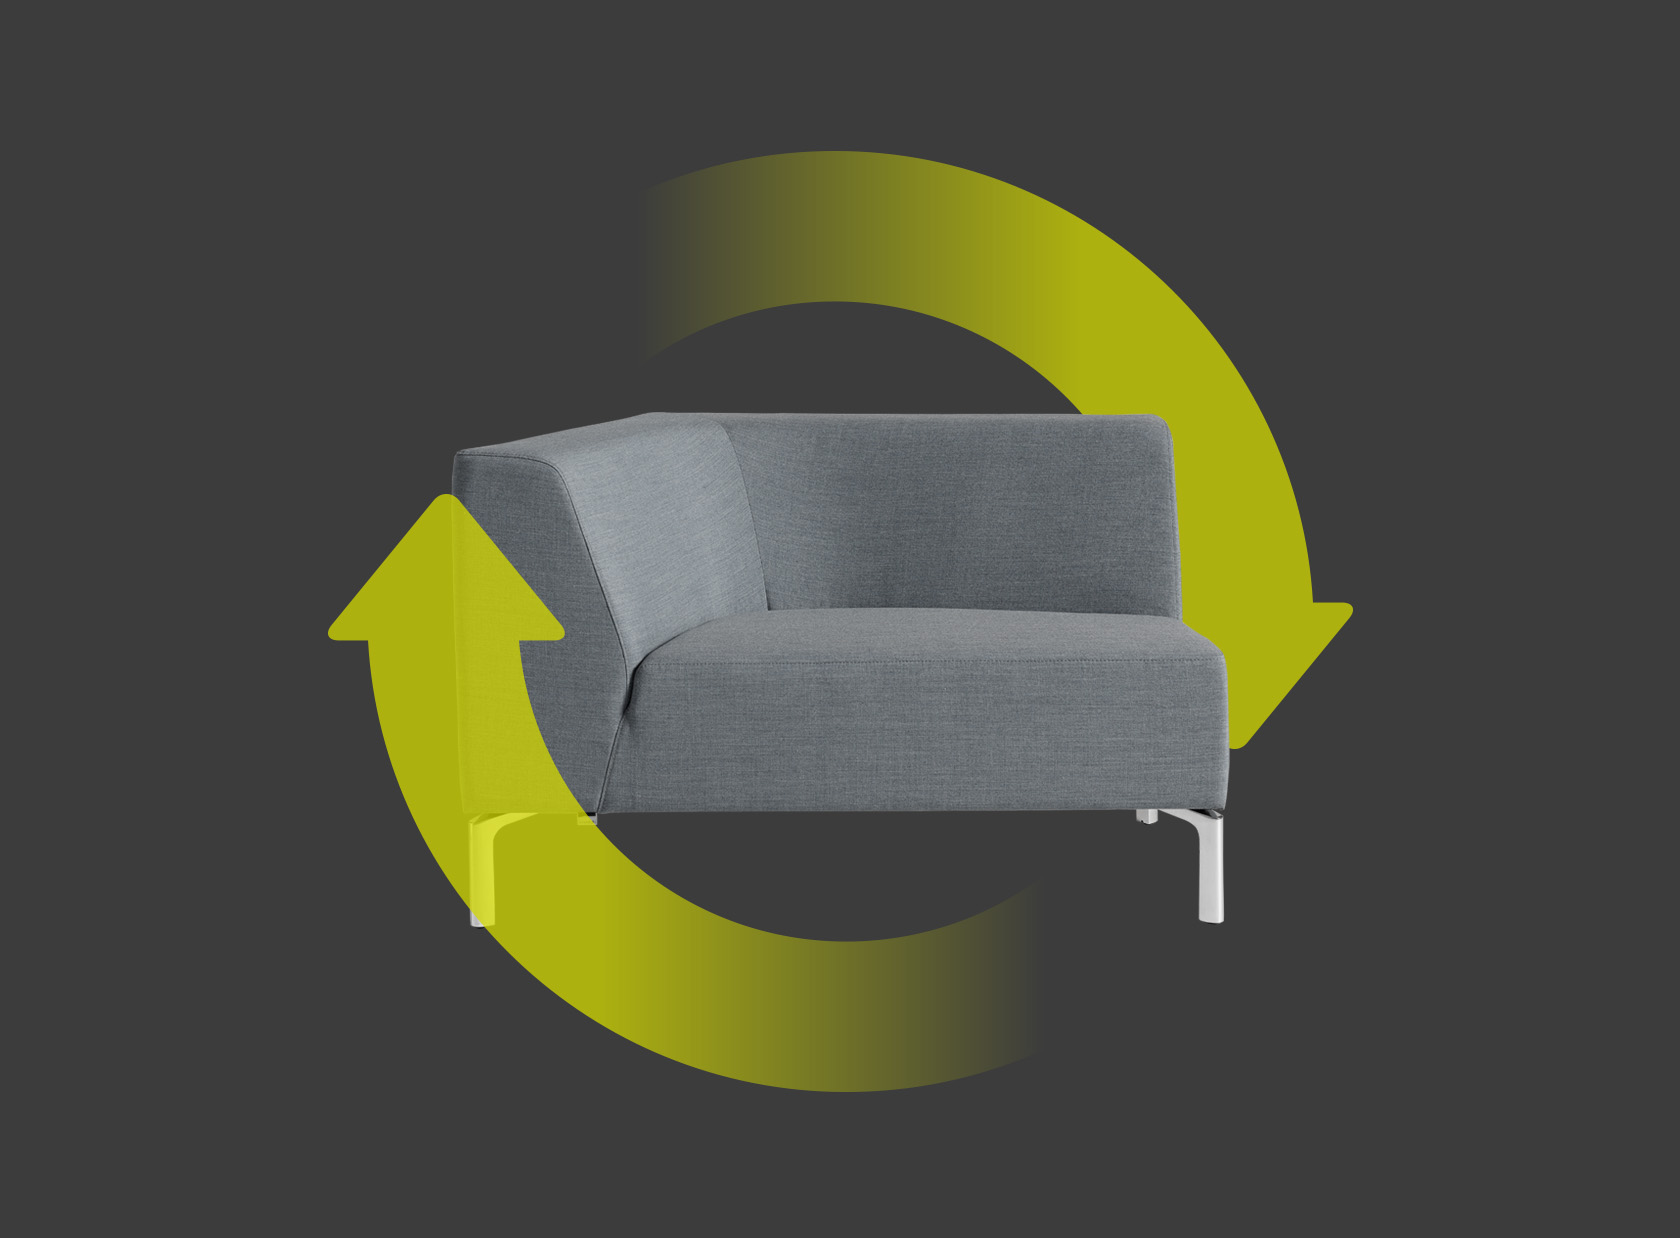 Seduta Tangram a destra in grigio con due frecce verdi che disegnano un cerchio intorno alla seduta. Le frecce indicano la sostenibilità e la riutilizzabilità della sedia.